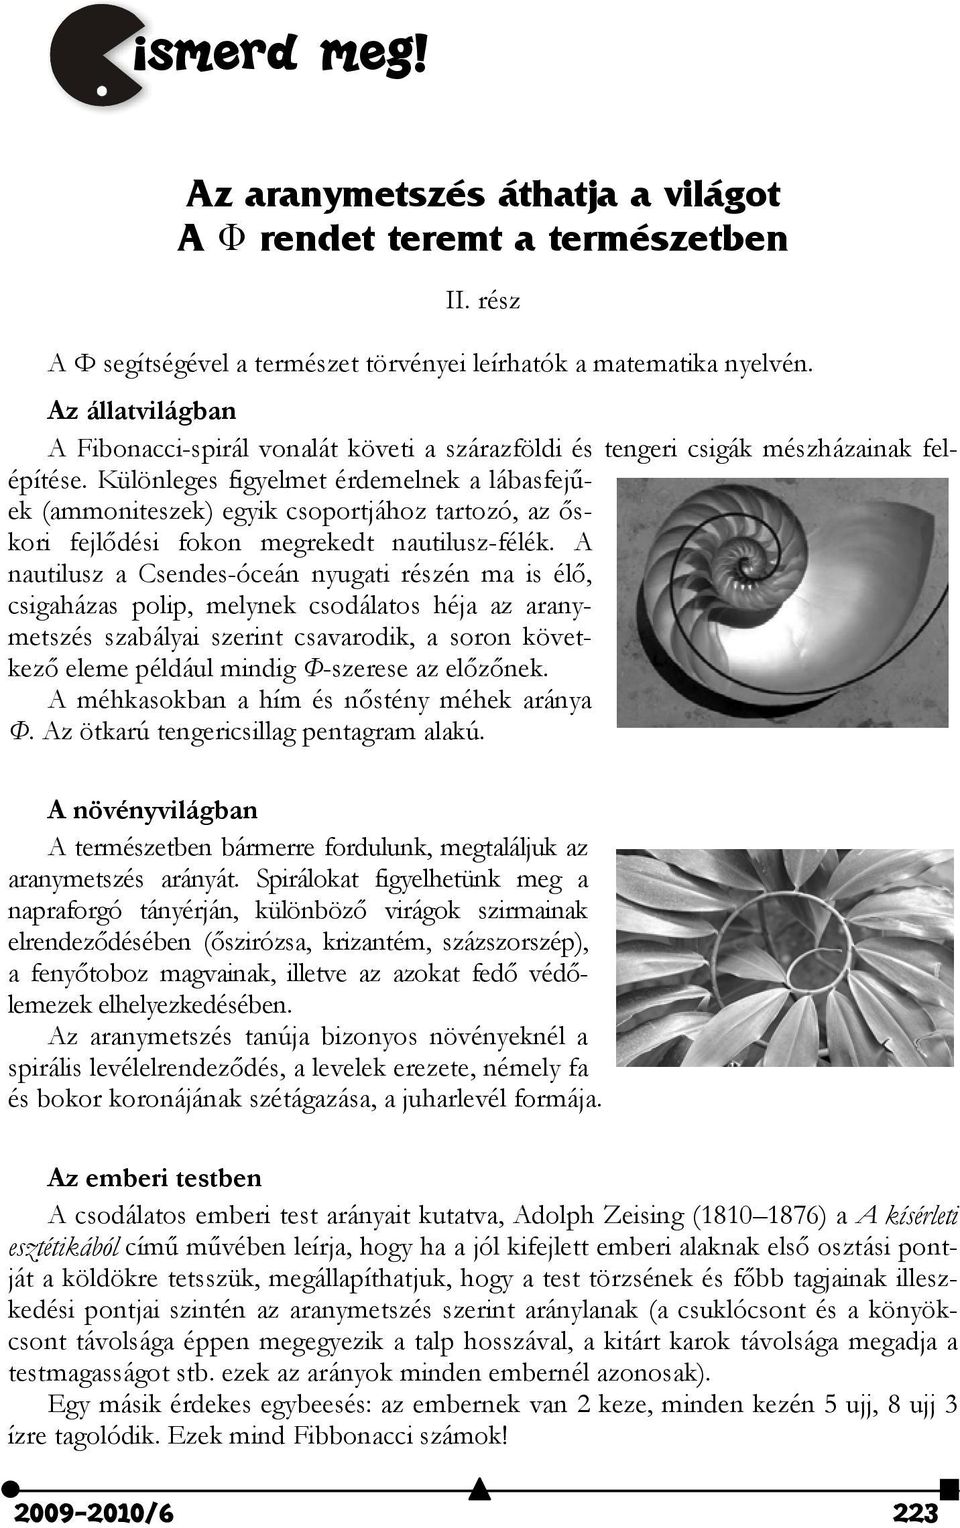 Különleges figyelmet érdemelnek a lábasfejűek (ammoniteszek) egyik csoportjához tartozó, az őskori fejlődési fokon megrekedt nautilusz-félék.